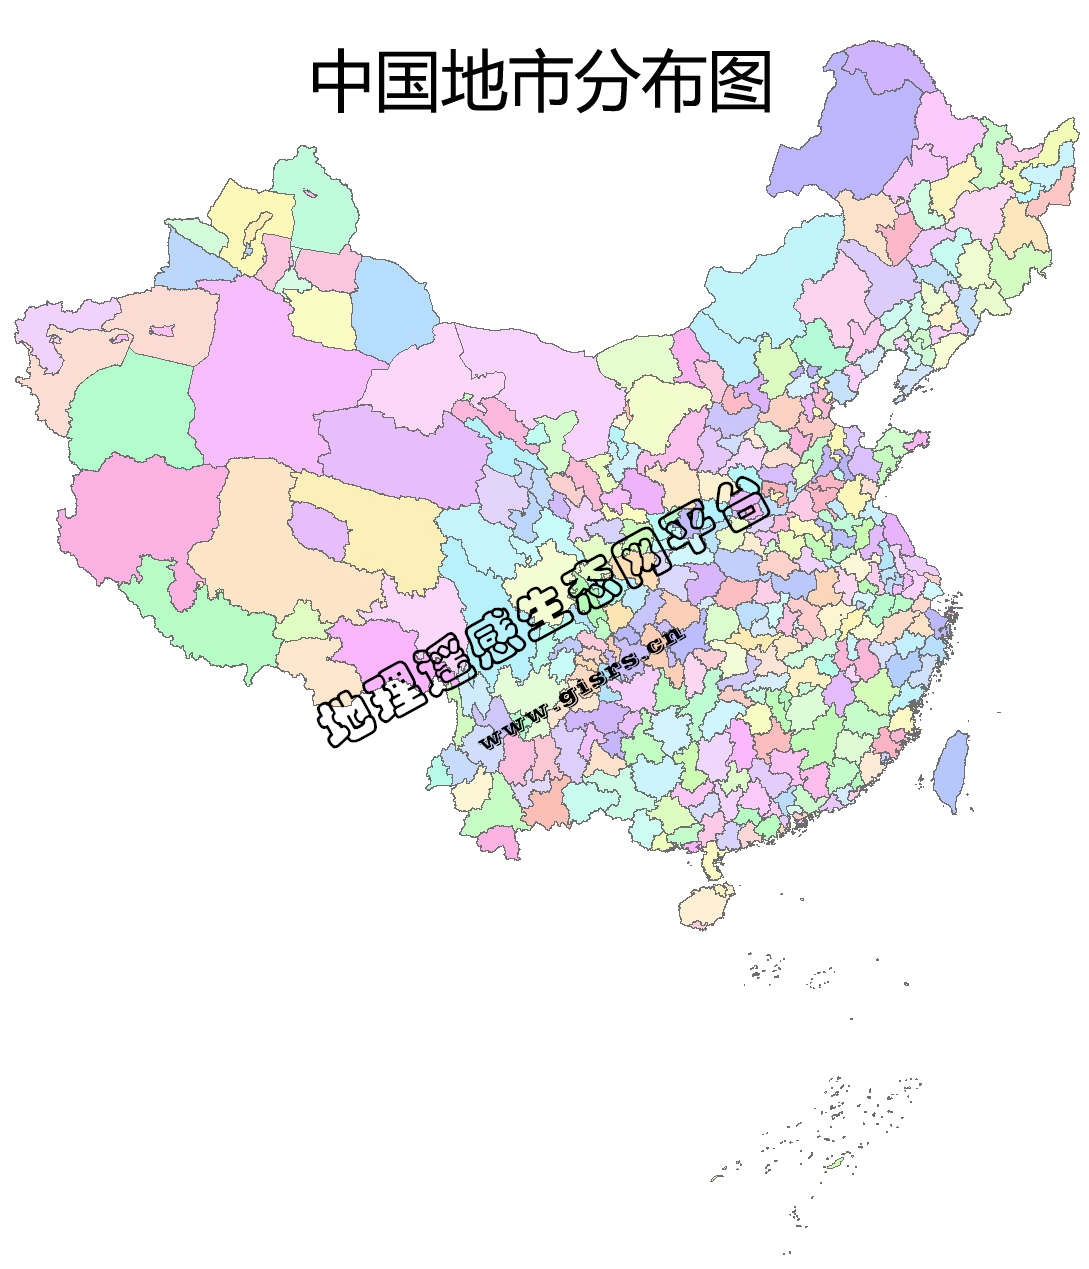 中国市级行政边界数据